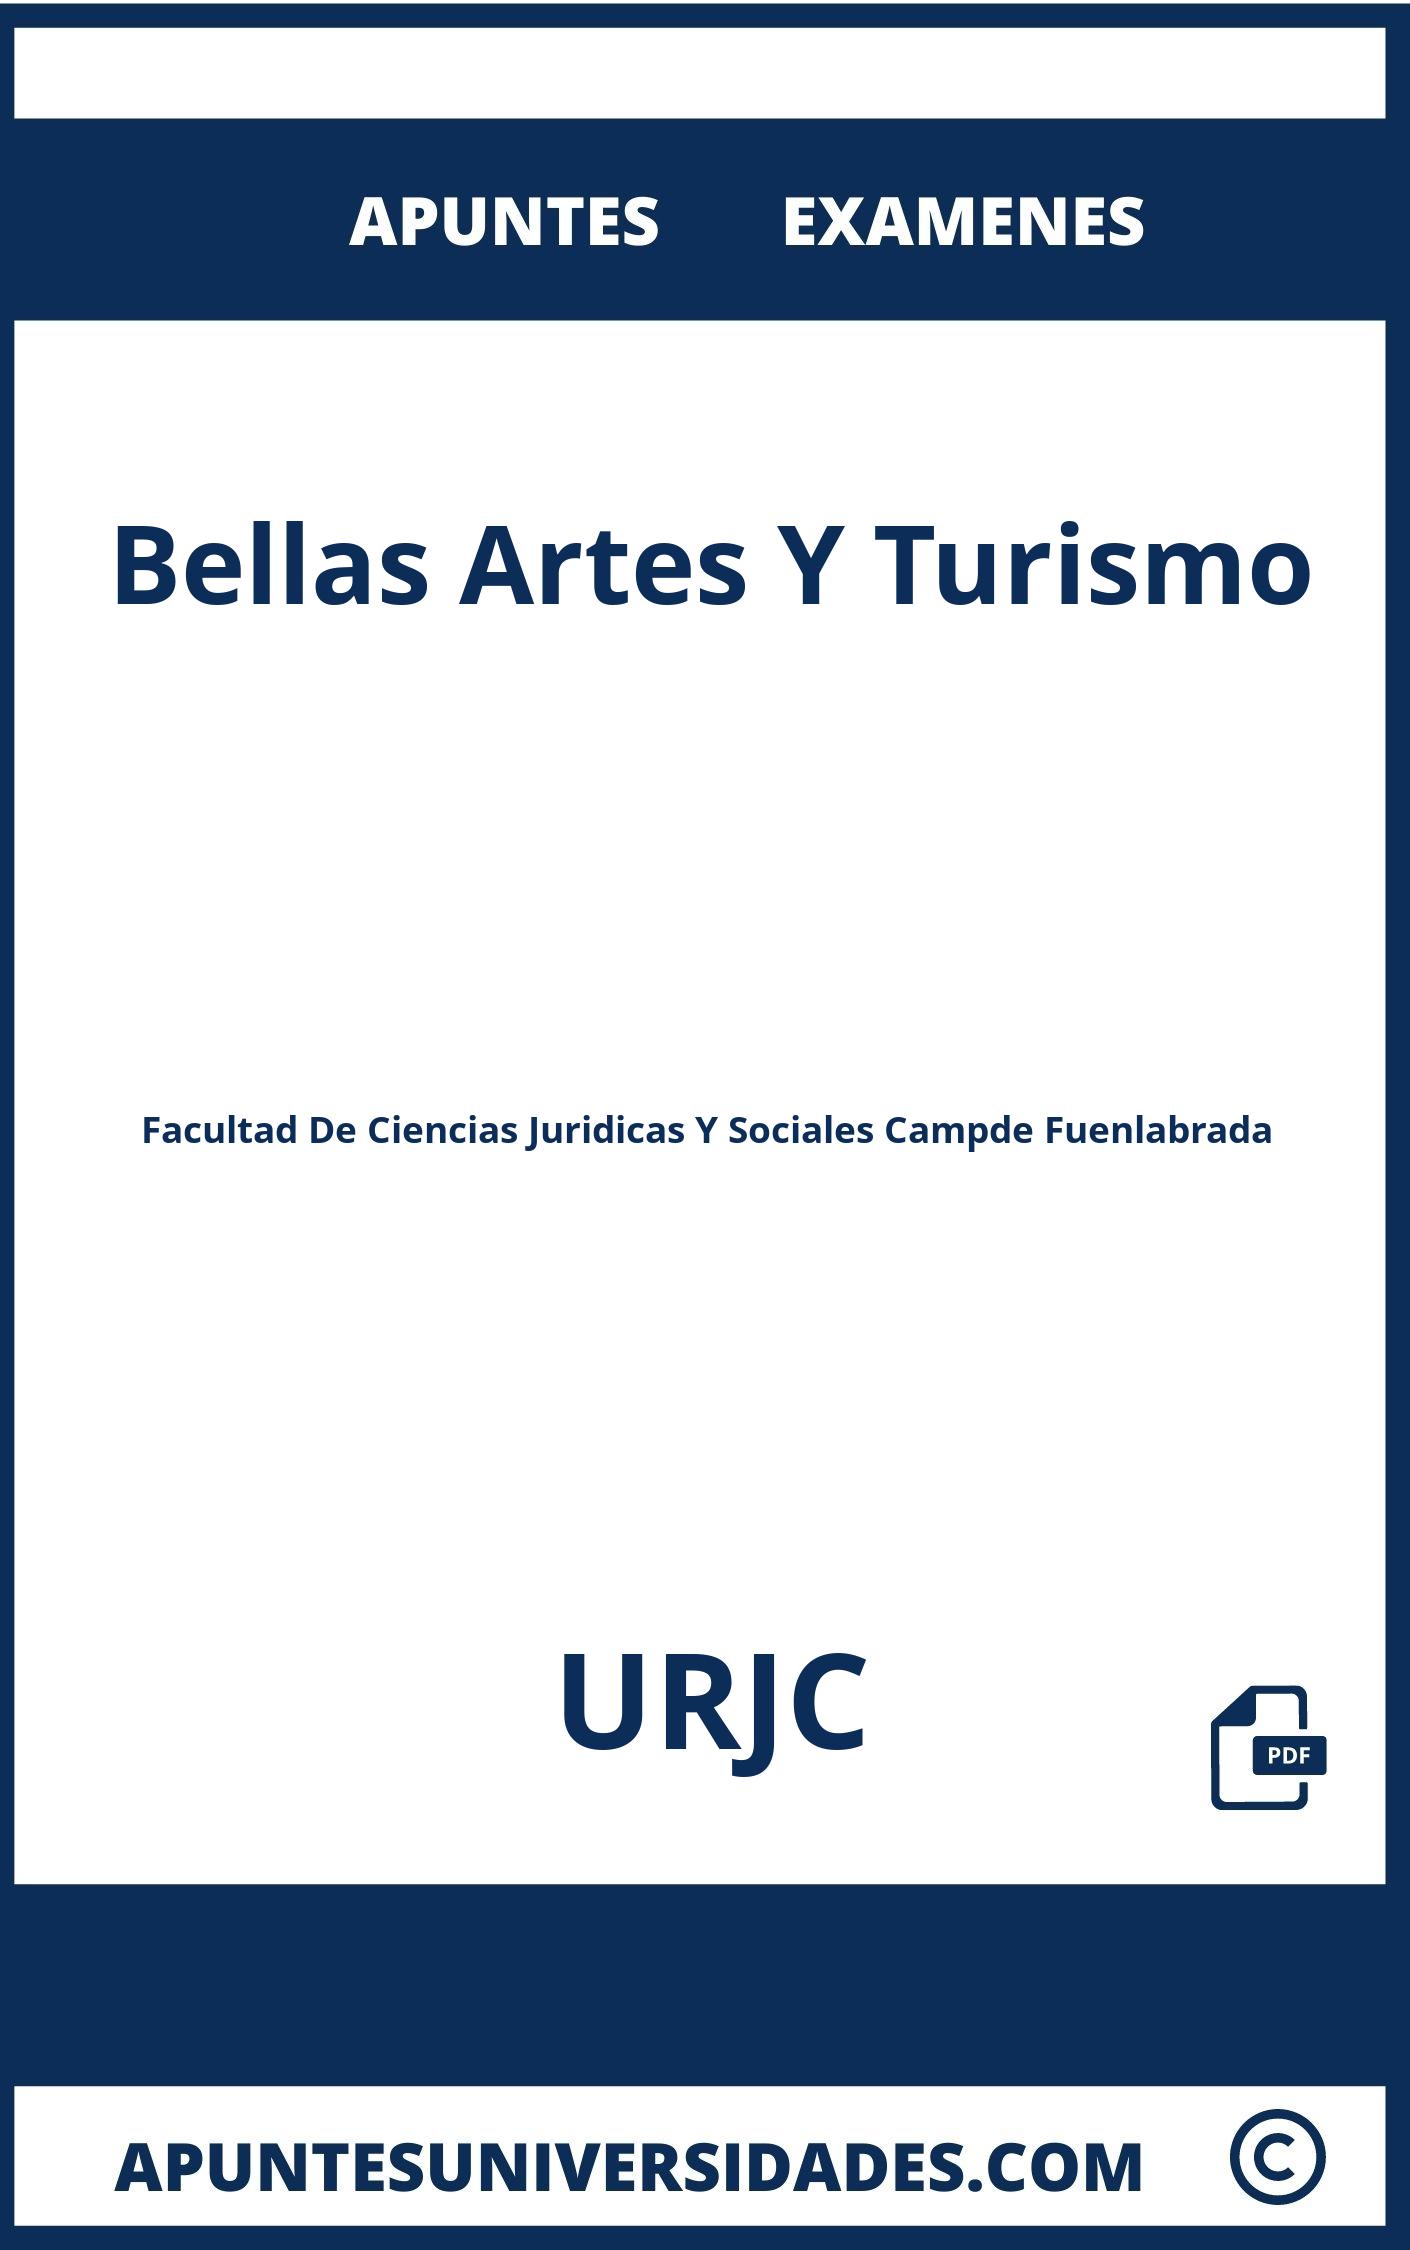 Bellas Artes Y Turismo URJC Examenes Apuntes